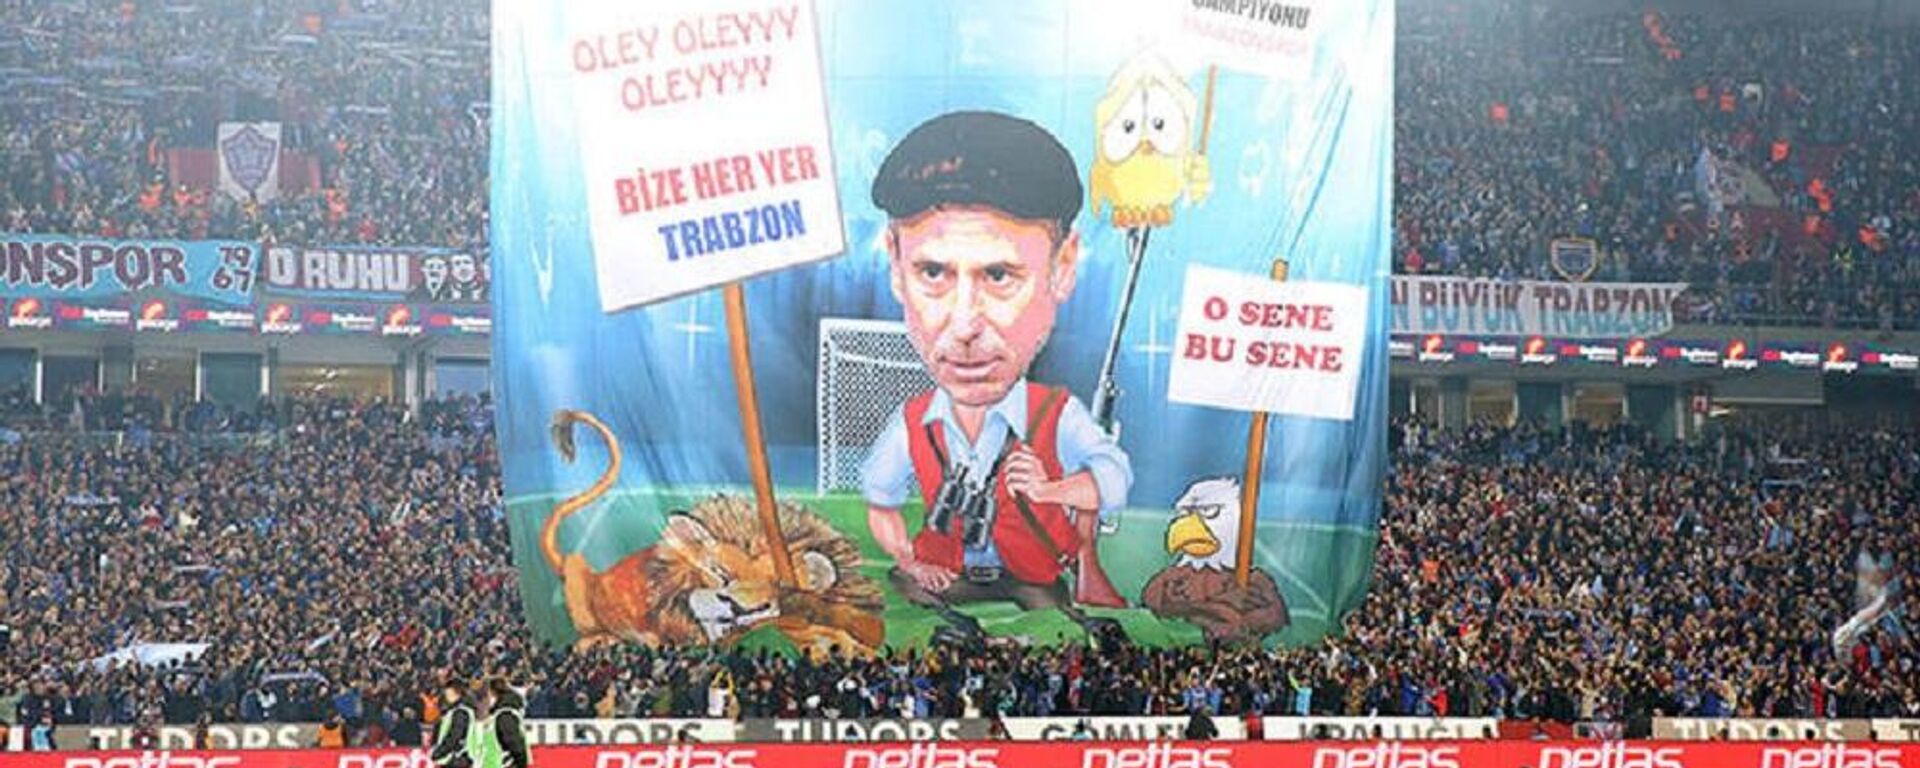 Fenerbahçe Kulübü'nden pankart tepkisi - Sputnik Türkiye, 1920, 03.05.2022